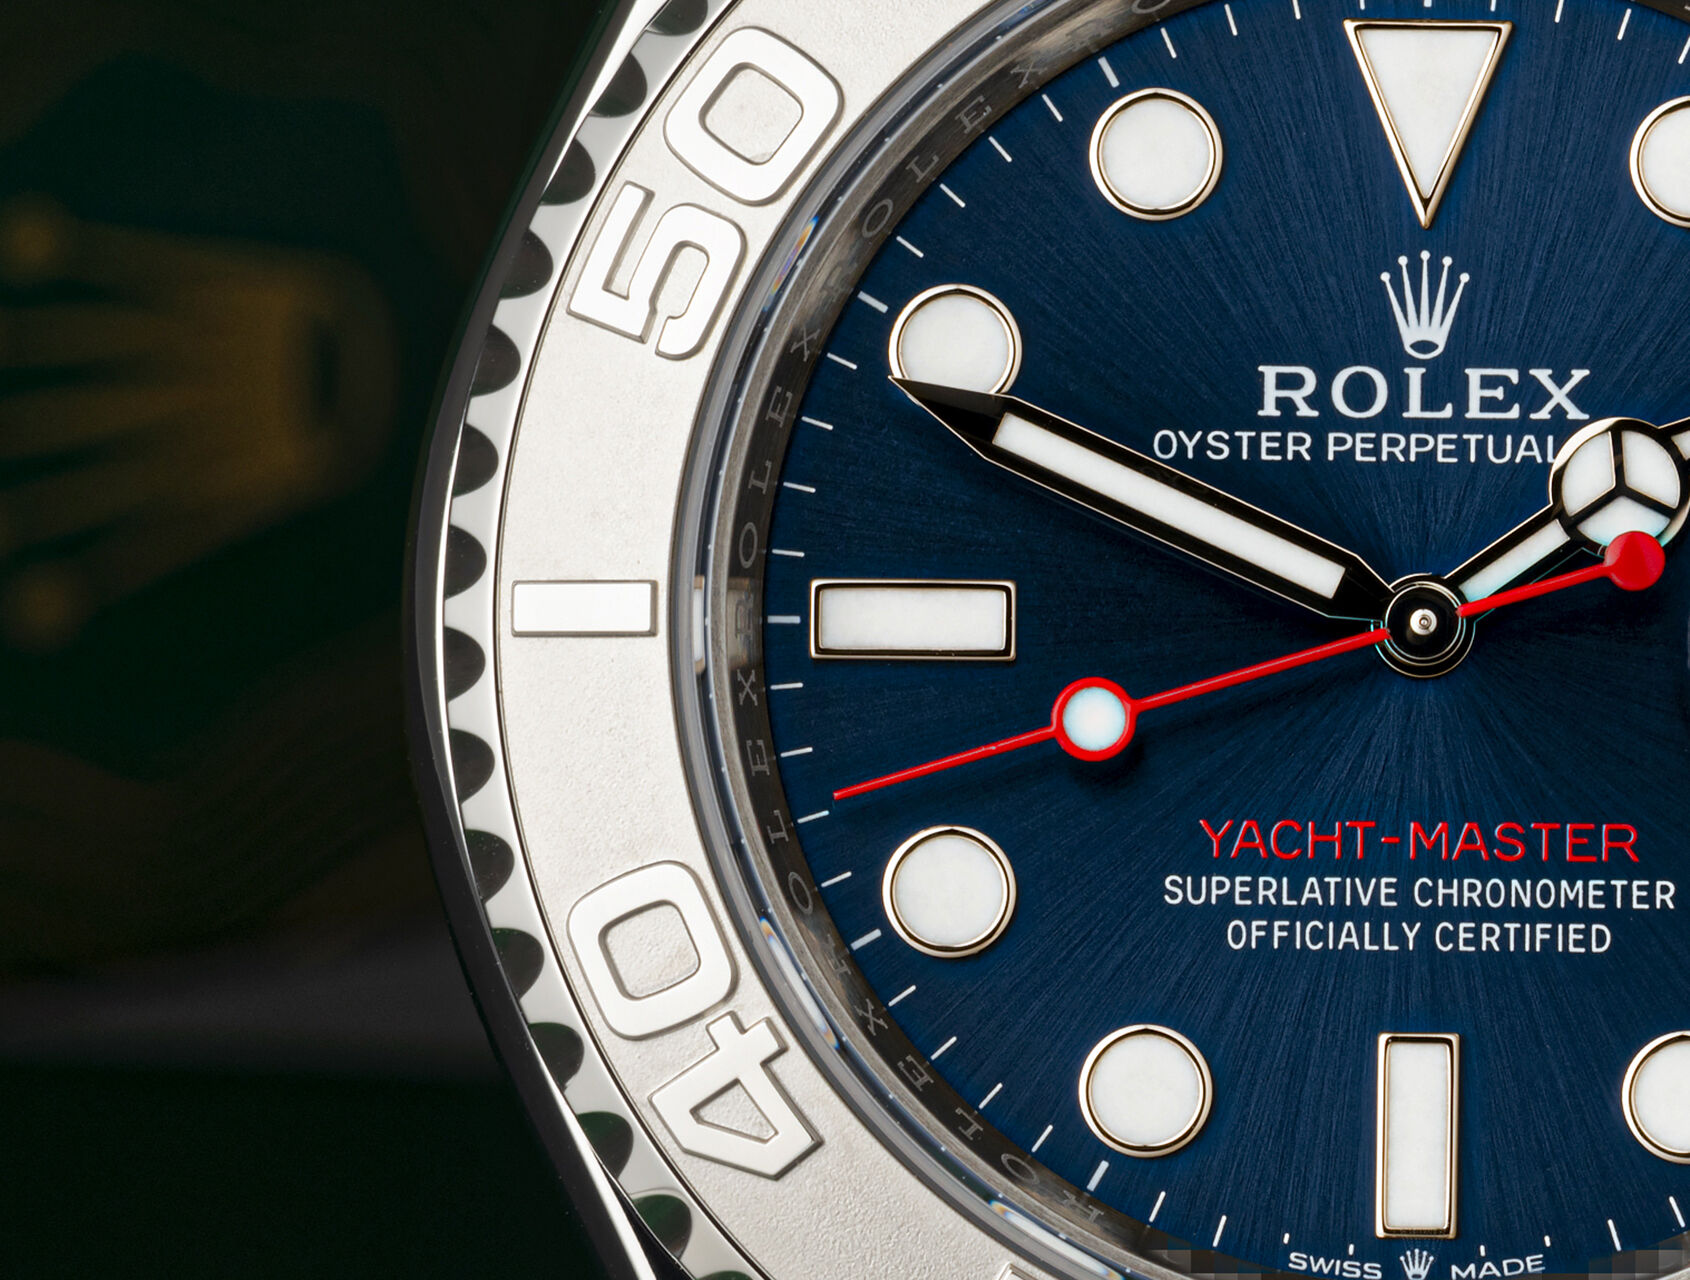 ref 126622 | 126622 - 5 Year Rolex Warranty | Rolex Yacht-Master